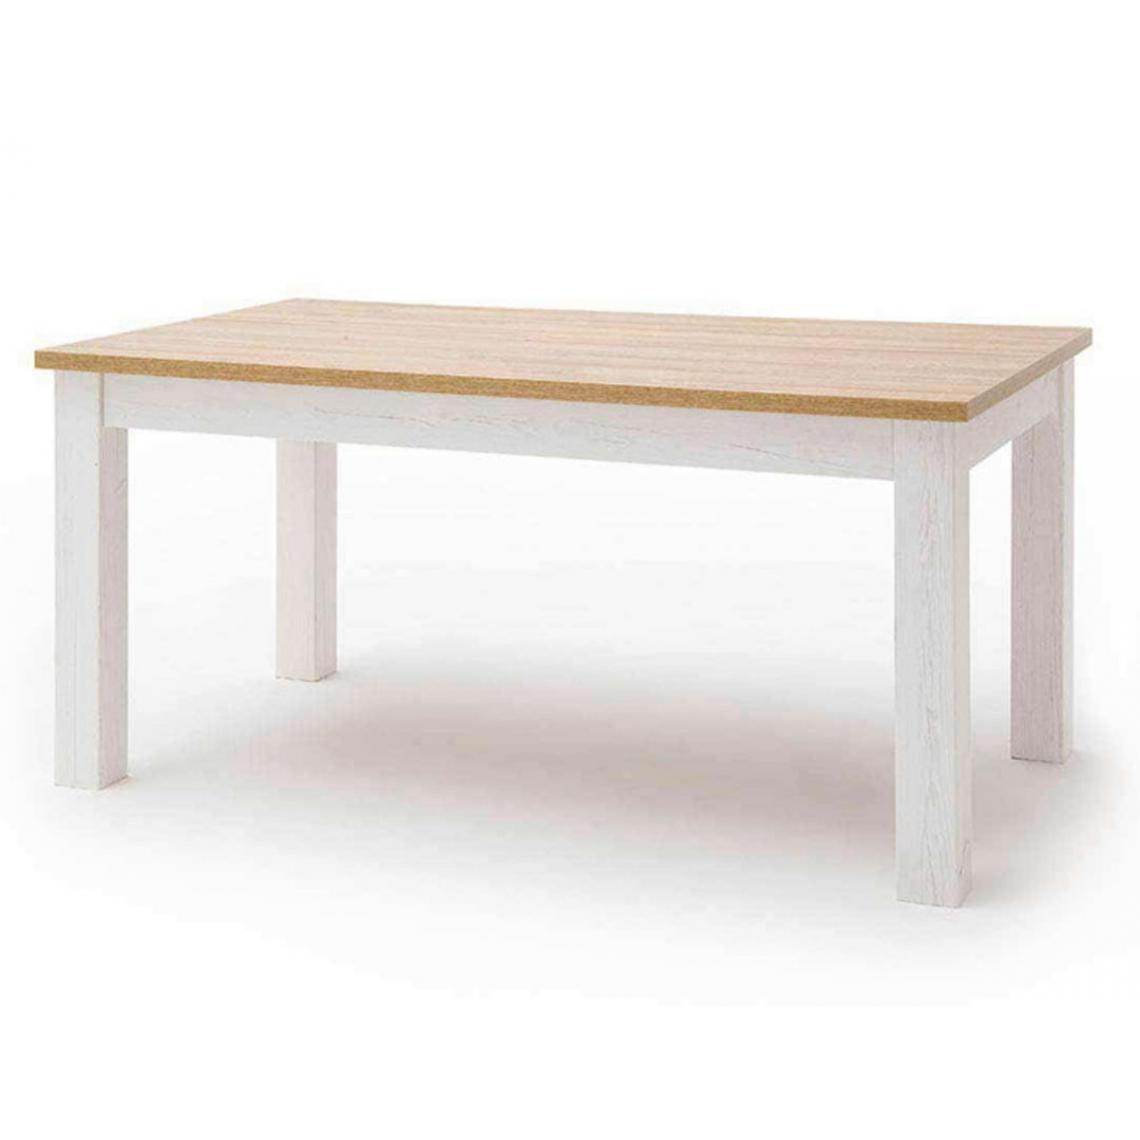 Pegane - Table à manger extensible en bois coloris blanc / chêne - L.160 x H.77 x P.90 cm - Tables à manger